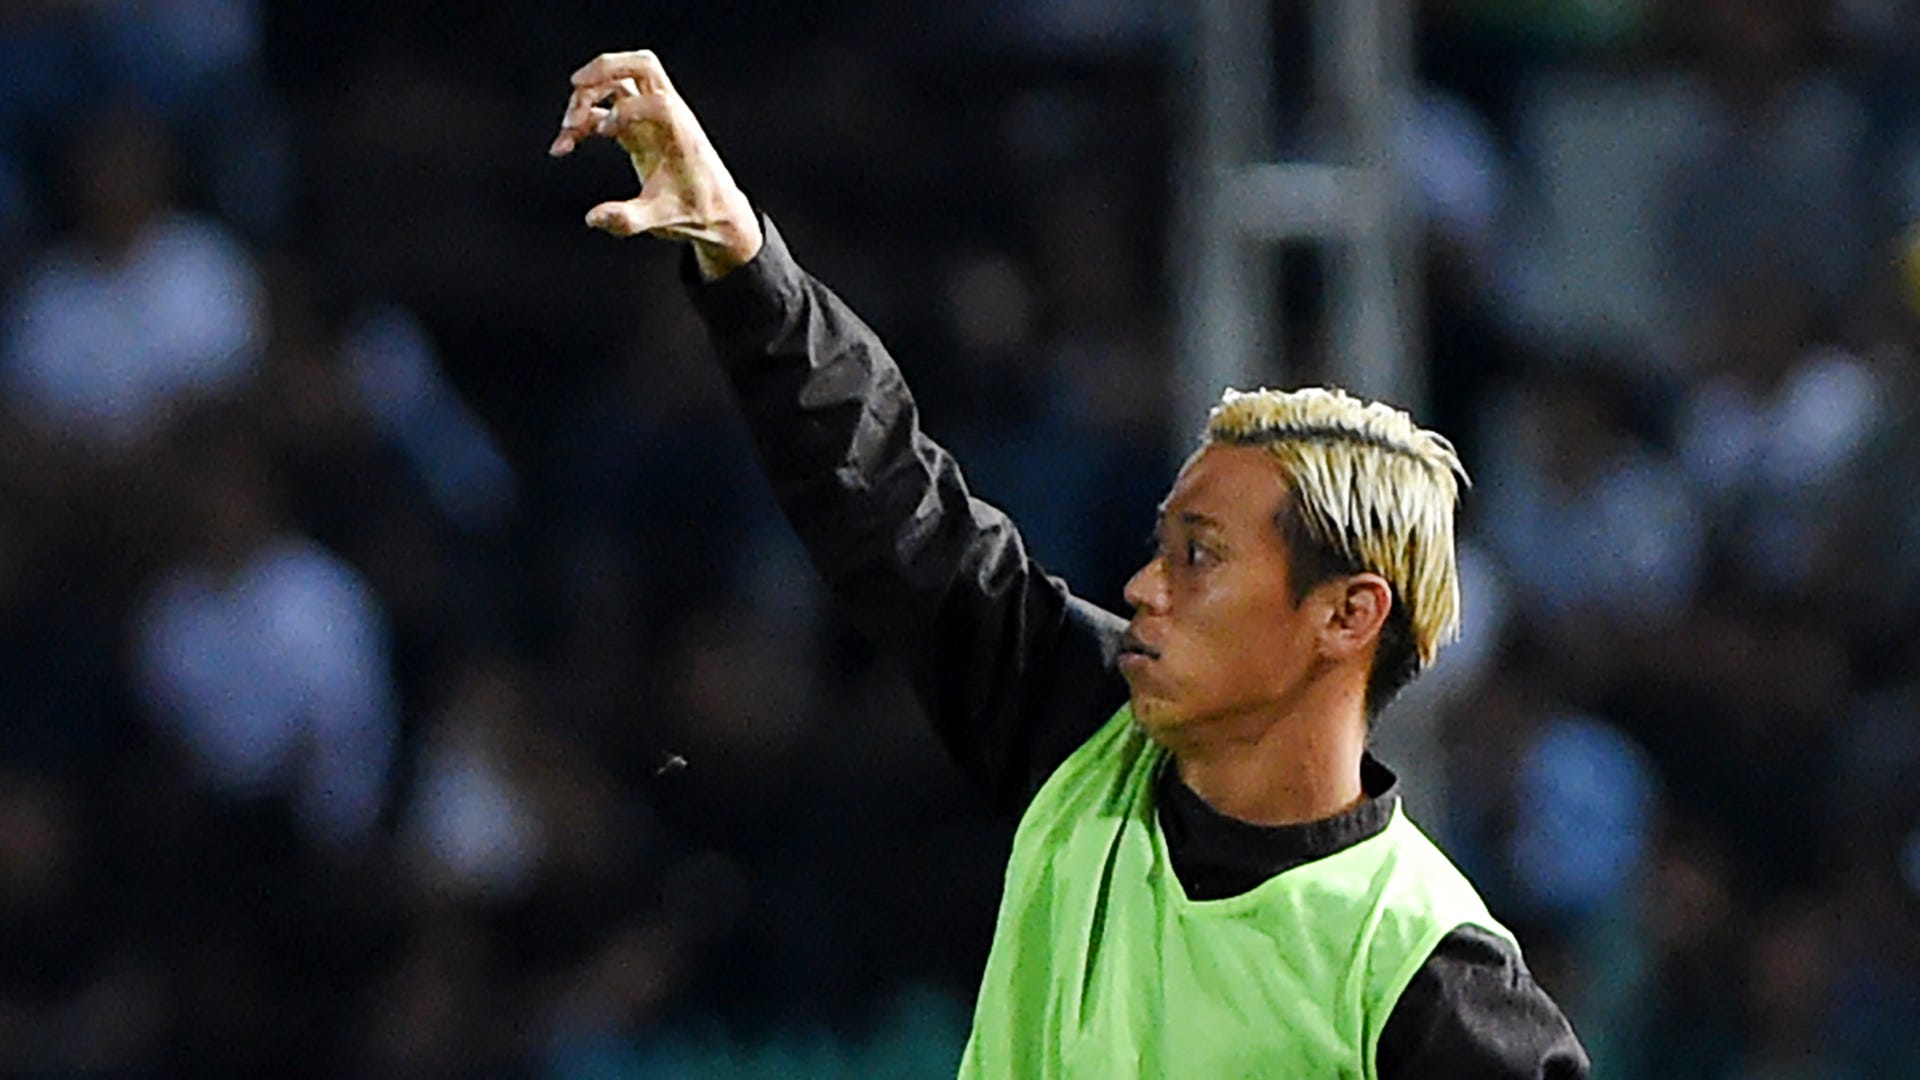 14失点のカンボジア歴史的大敗後 本田圭佑がスピーチ 答えはプロフェッショナルであること Goal Com 日本